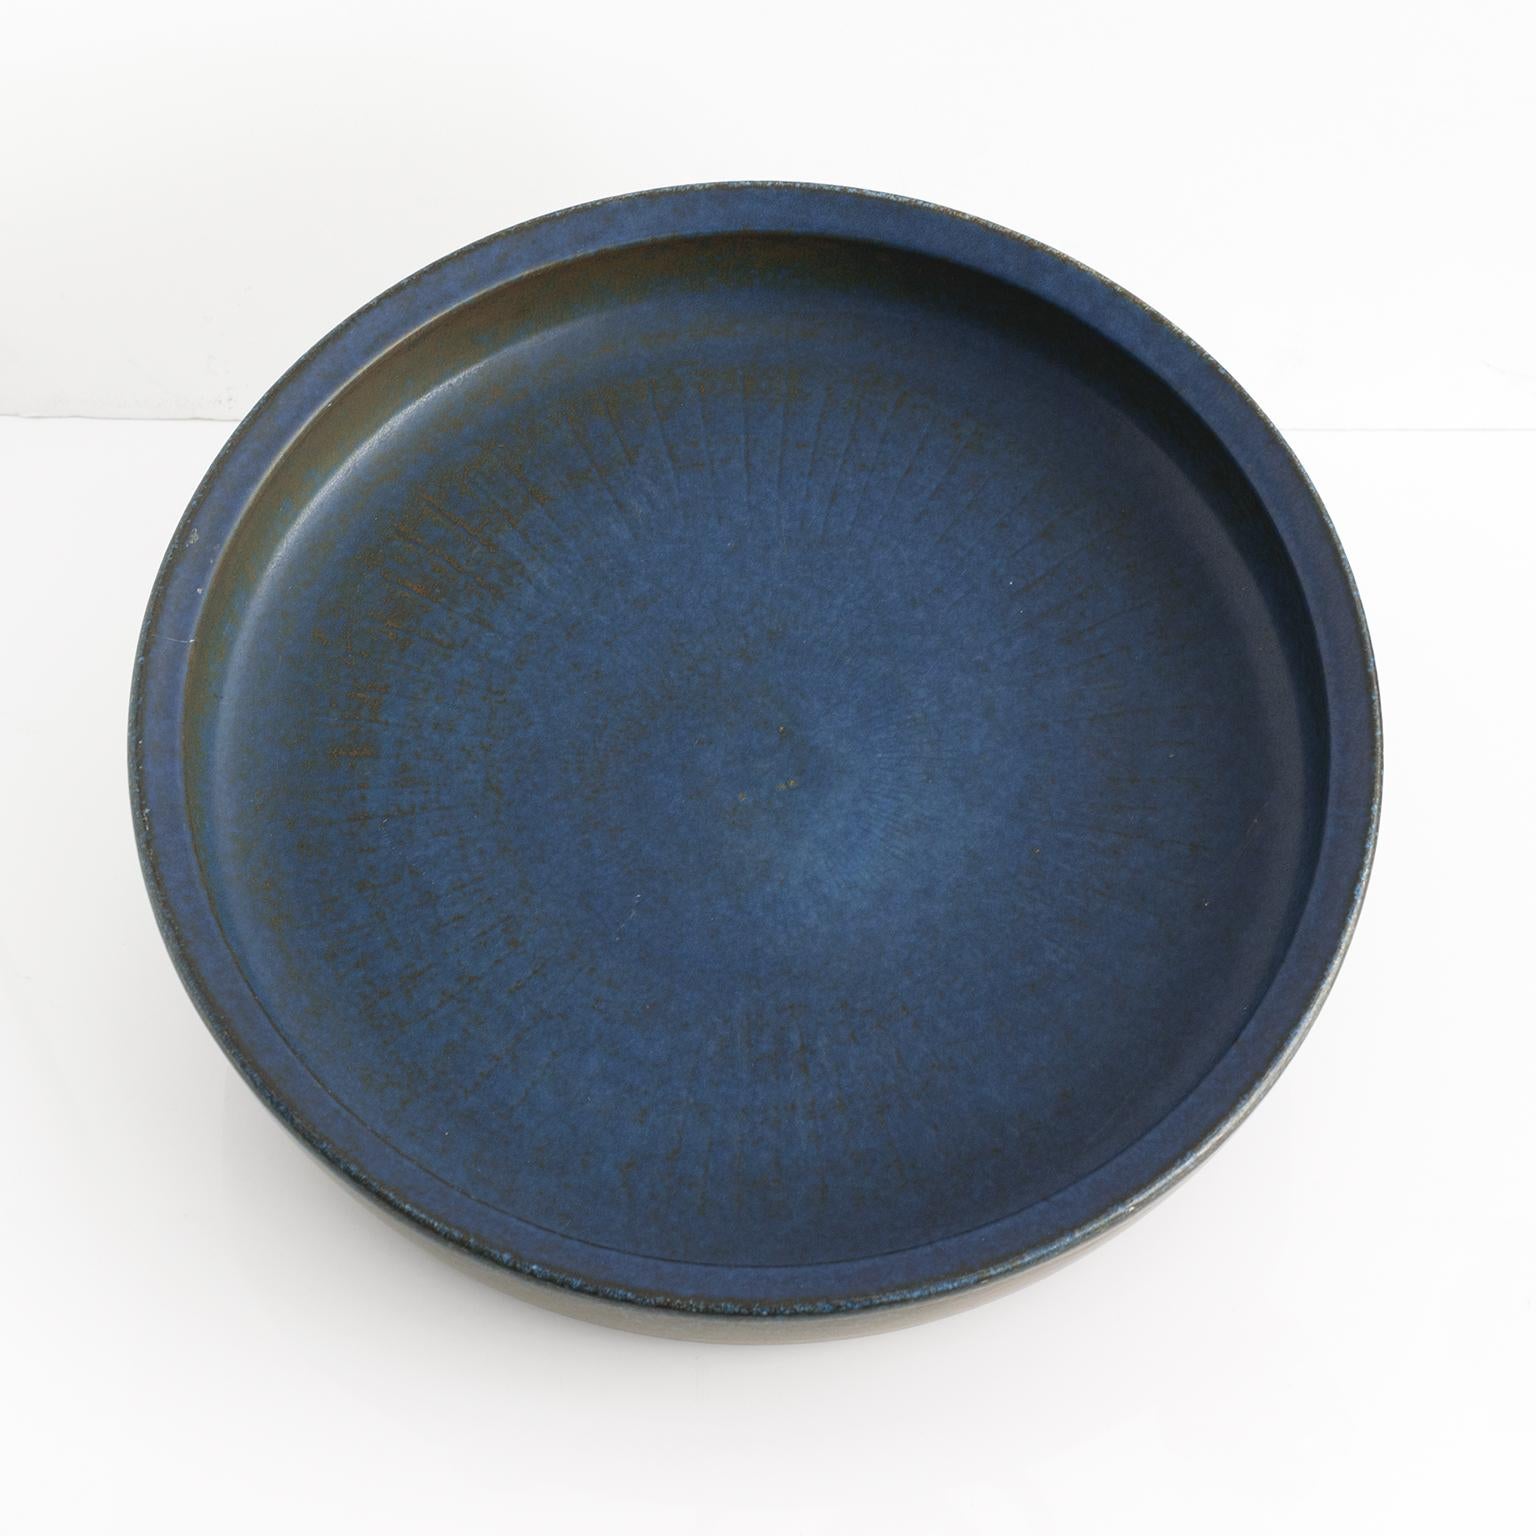 Scandinavian Modern Carl-Harry Stålhane large blue bowl, Rorstrand Studio, Sweden, 1960